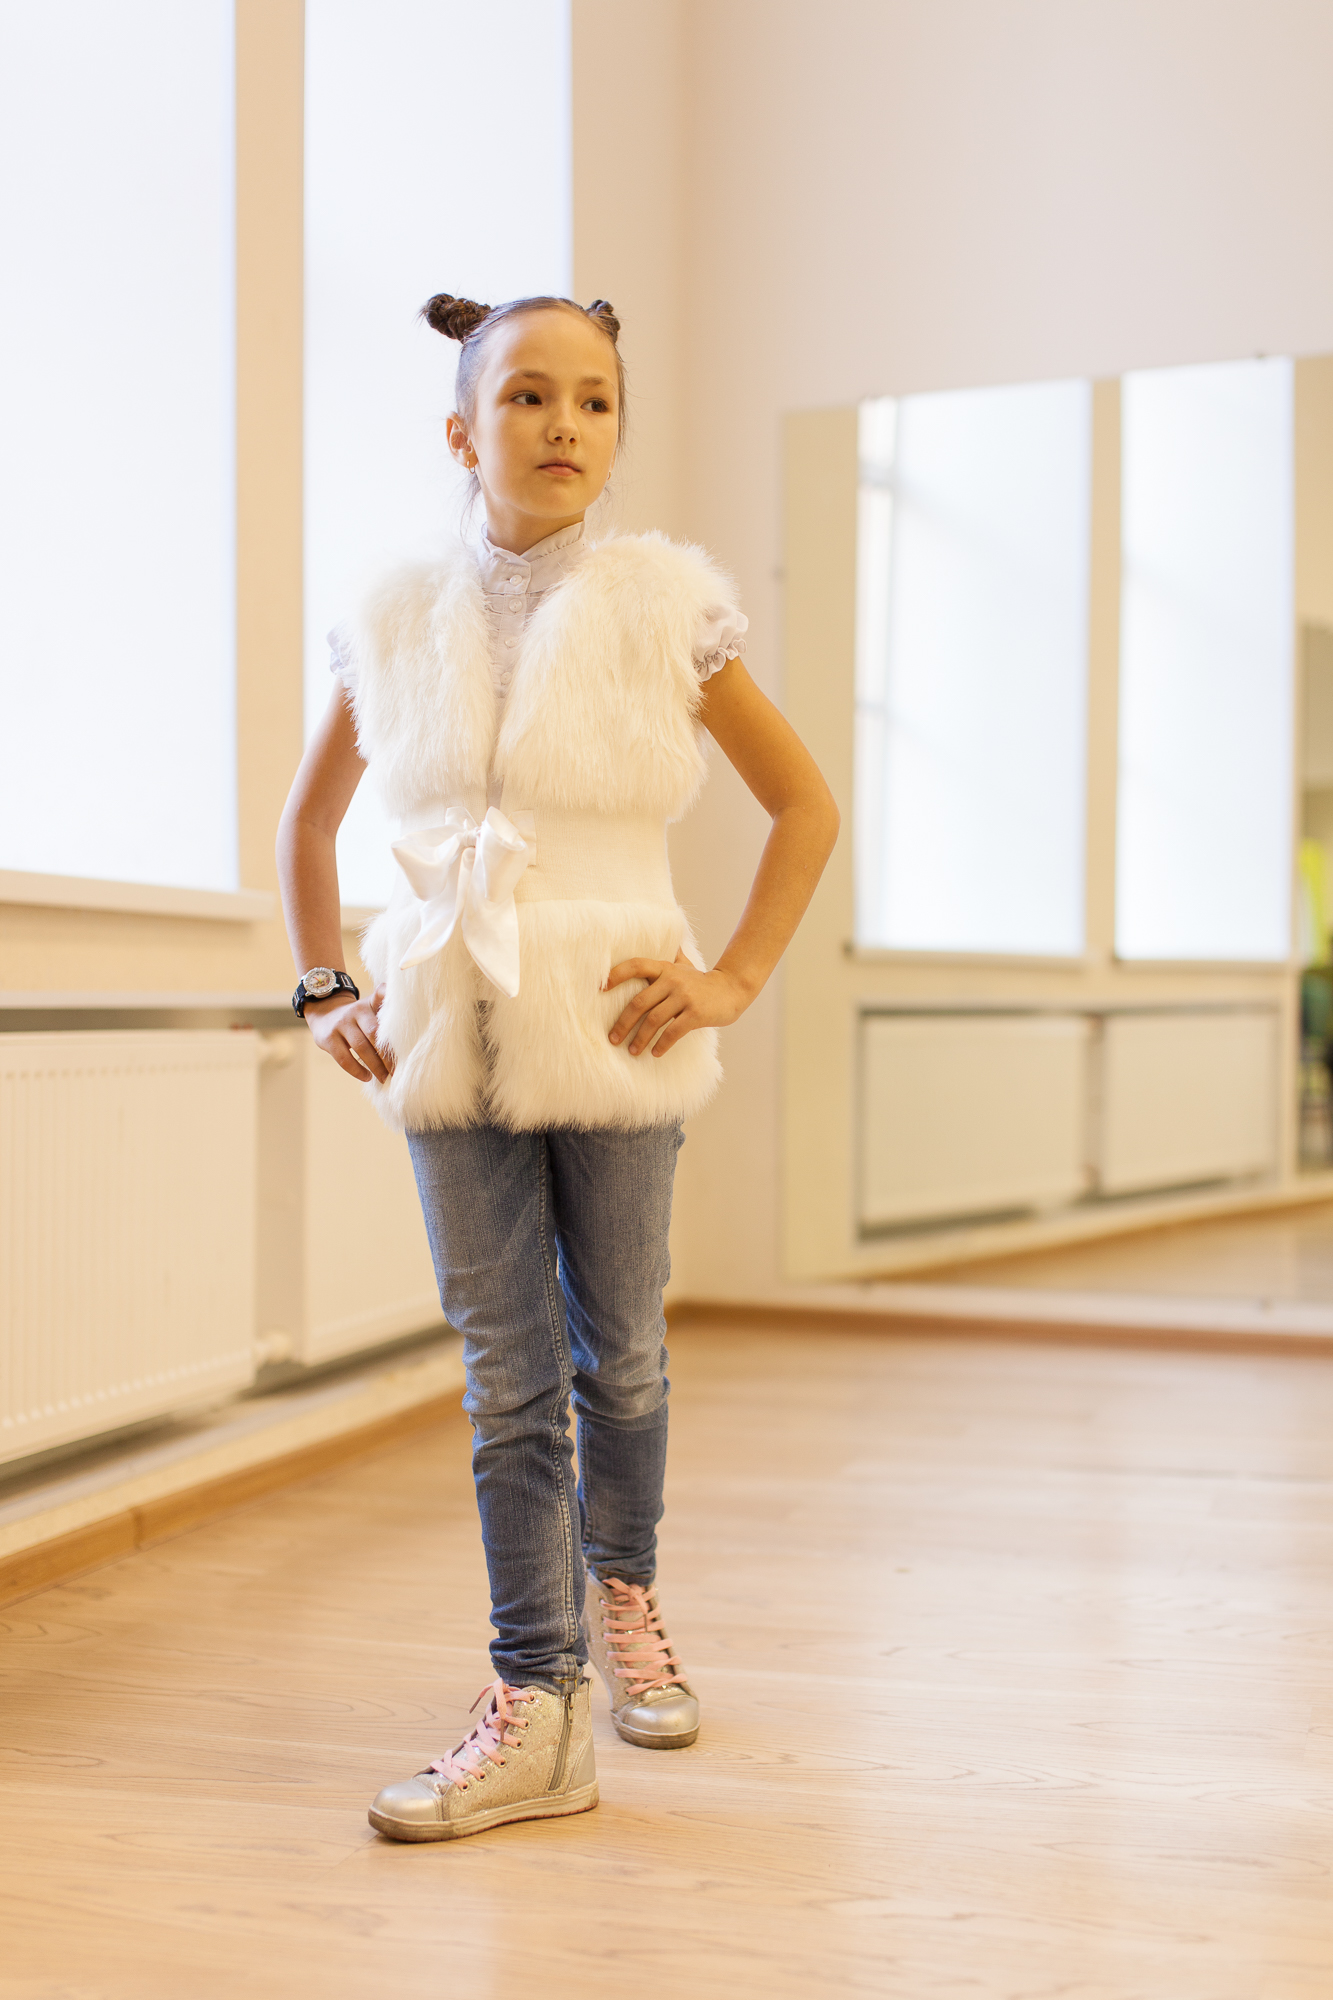 Маргарита Туркова - аккредитованная модель для участия в подиумных показах на Междунродной Детской Неделе моды